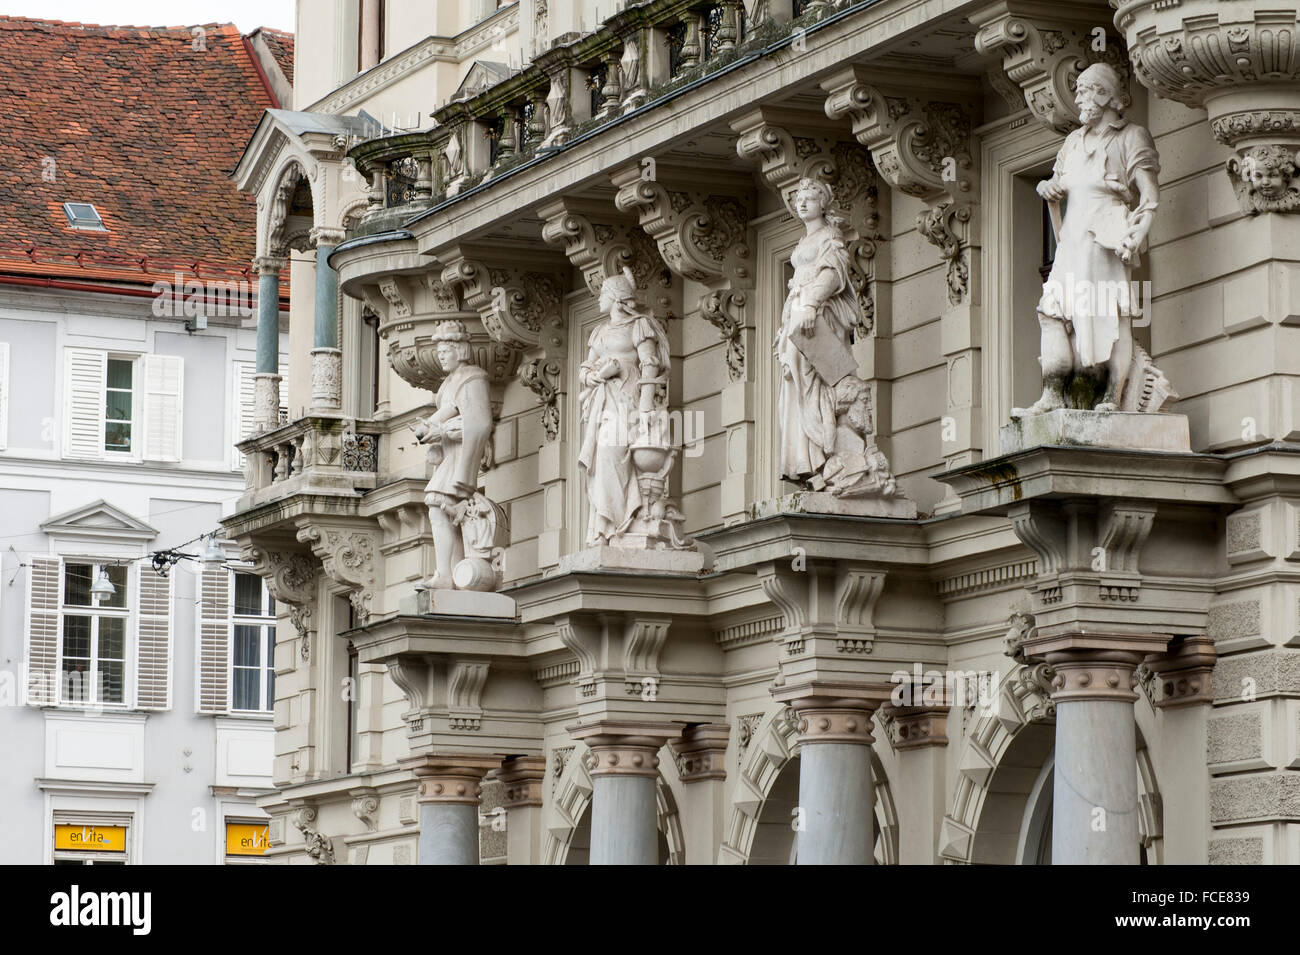 Façade de l'Hôtel de ville, la place principale, Site du patrimoine mondial de l'UNESCO ville de Graz - Centre Historique, Steiermark, Autriche Banque D'Images